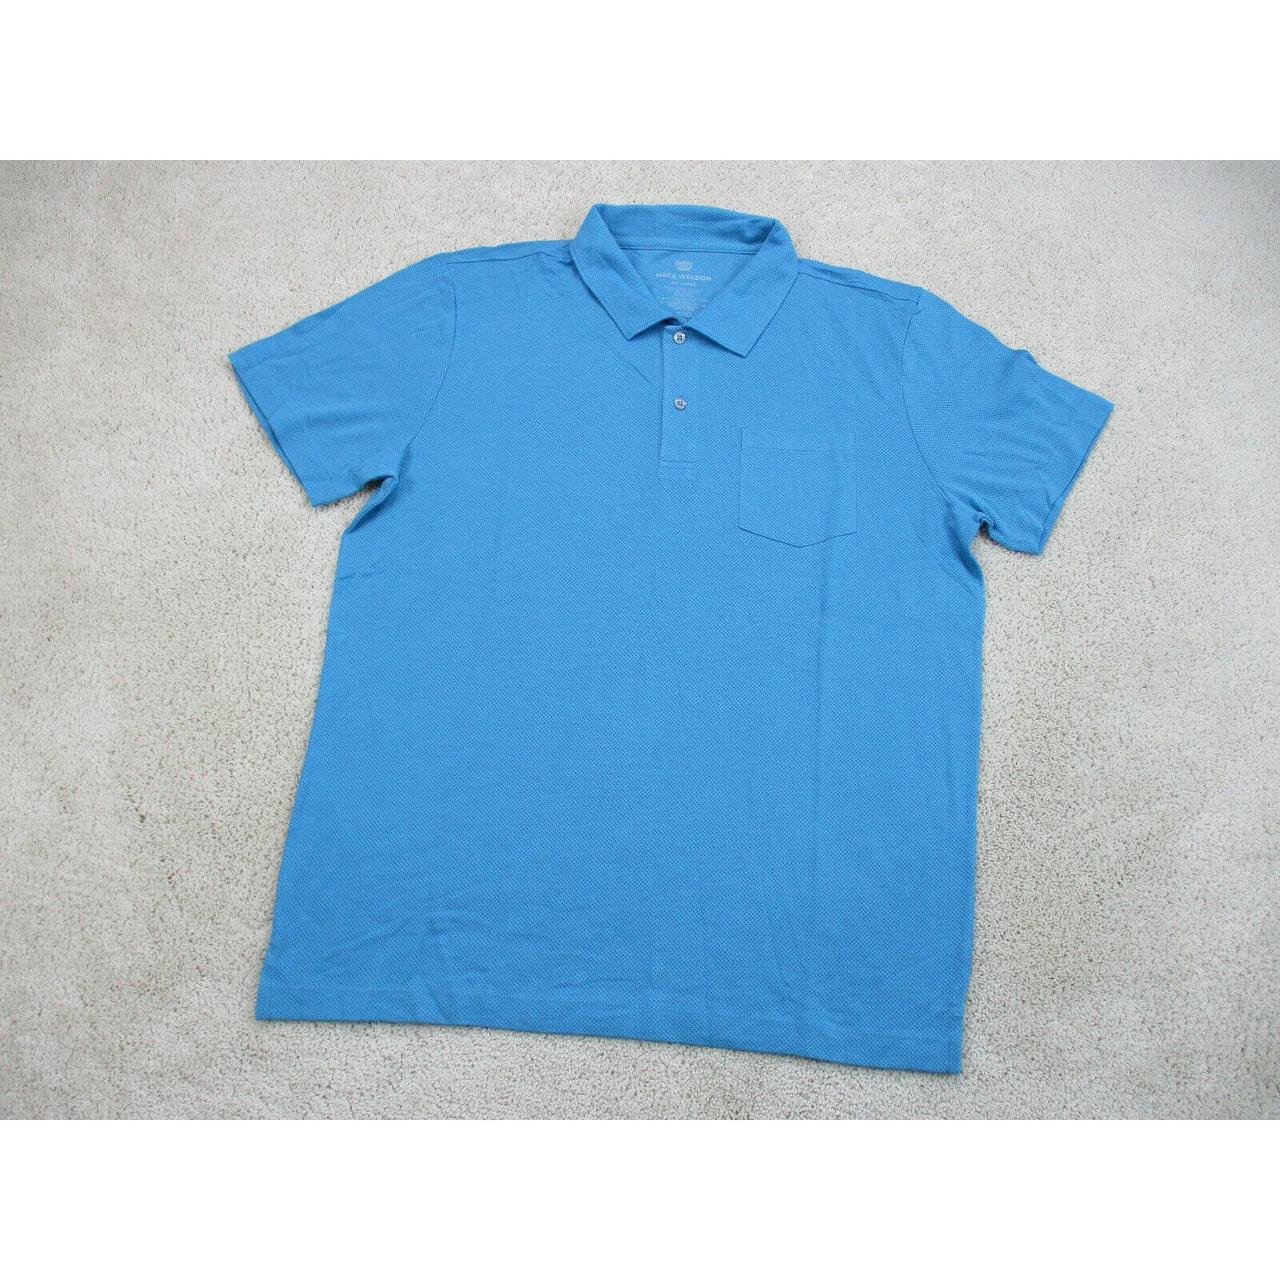 Mack Weldon Men's Blue Shirt (2)